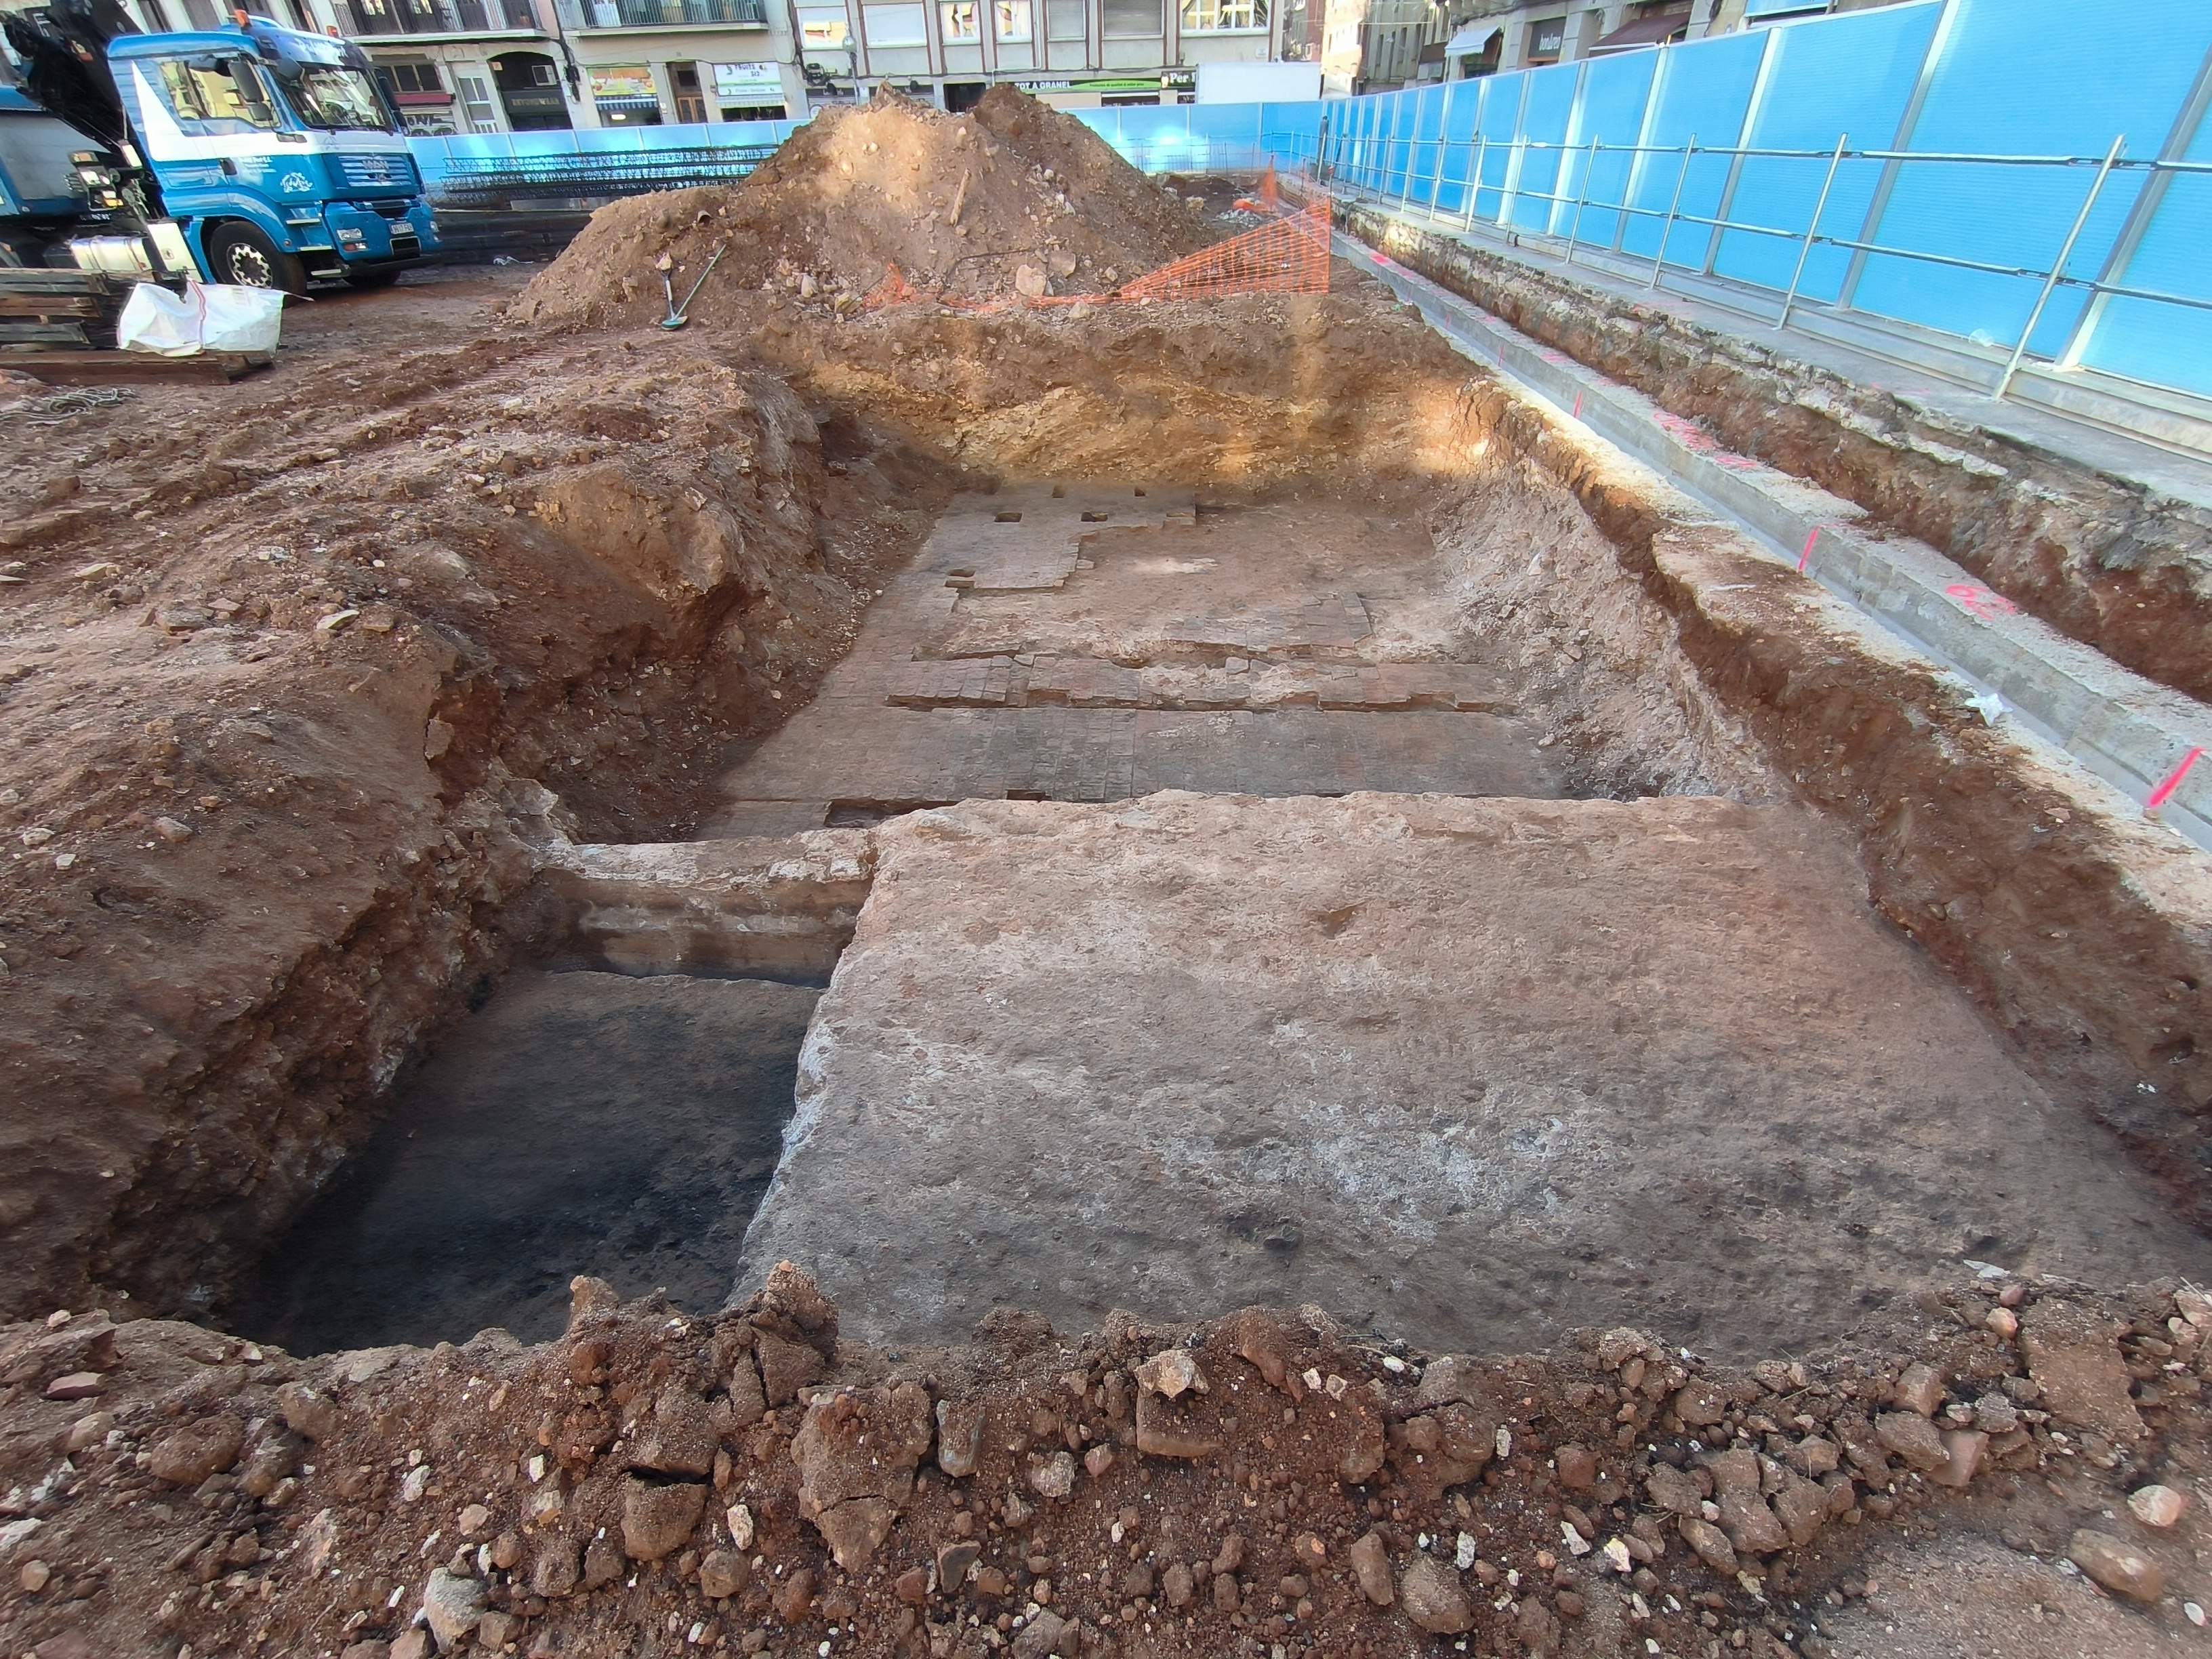 Afloren restes arqueològiques sota el mercat de l’Abaceria de Gràcia